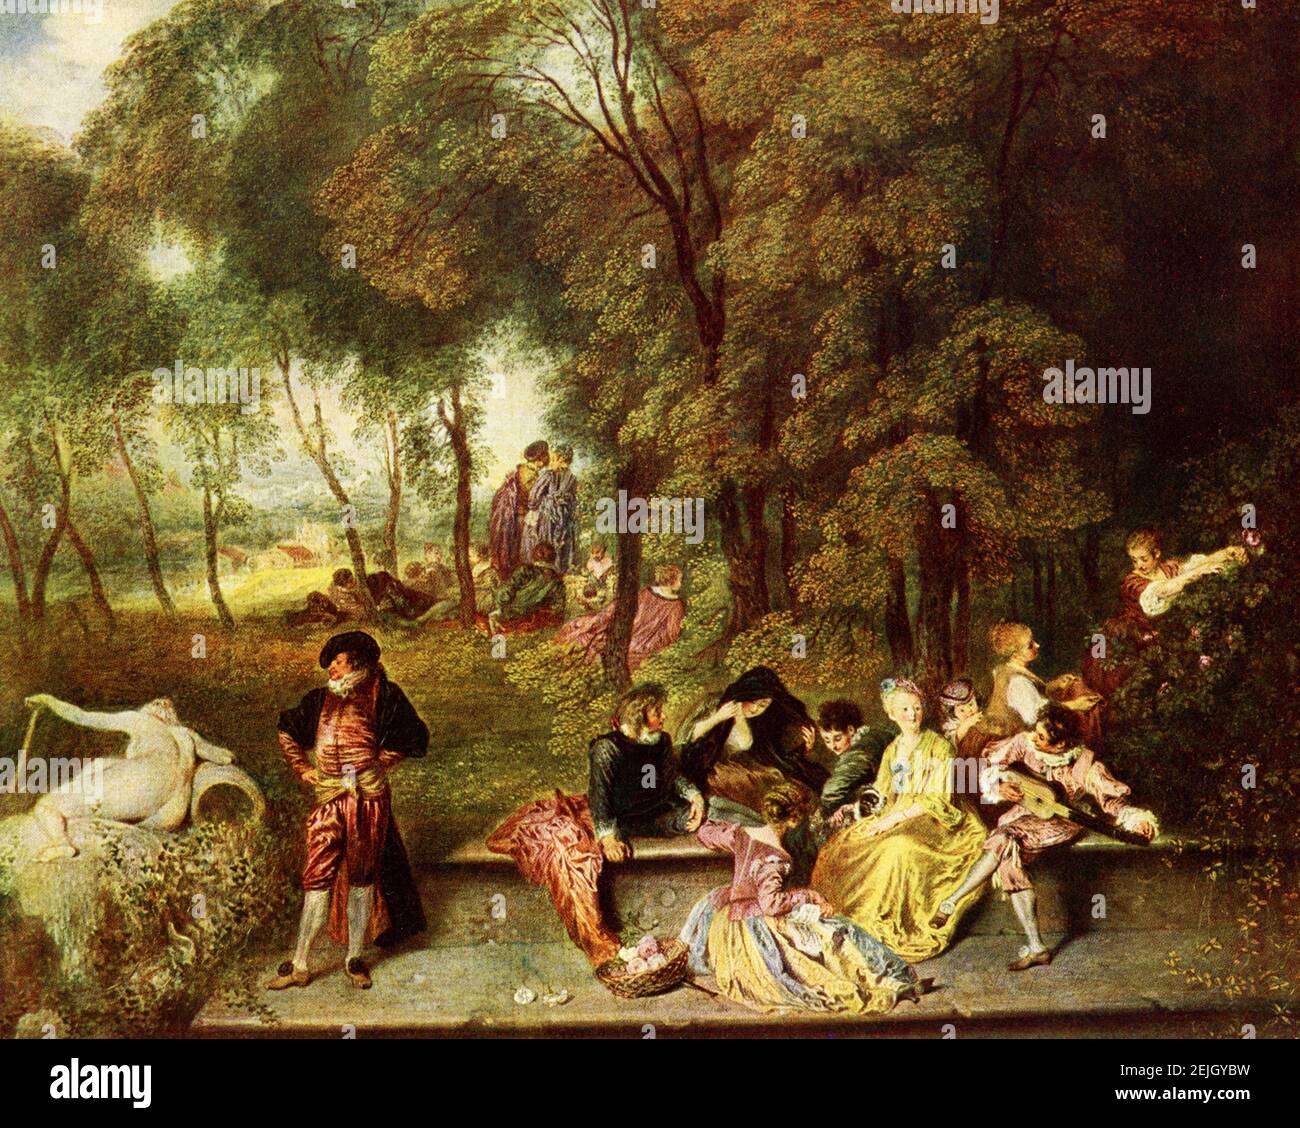 Queste immagini mostrano Die Unterhaltung im Freien (incontro all'aria aperta) di Antoine Watteau, ospitato nella Galleria di Stato di Dresda, Germania. Il dipinto risale al 1719. Jean-Antoine Watteau (1684-1721) è stato un pittore e disegnatore francese la cui breve carriera ha spinto il risveglio dell'interesse per il colore e il movimento, come si vede nella tradizione di Correggio e Rubens. Rivitalizzò lo stile barocco in declino, spostandolo al meno severo, più naturalistico, meno formalmente classico, rococo. Foto Stock